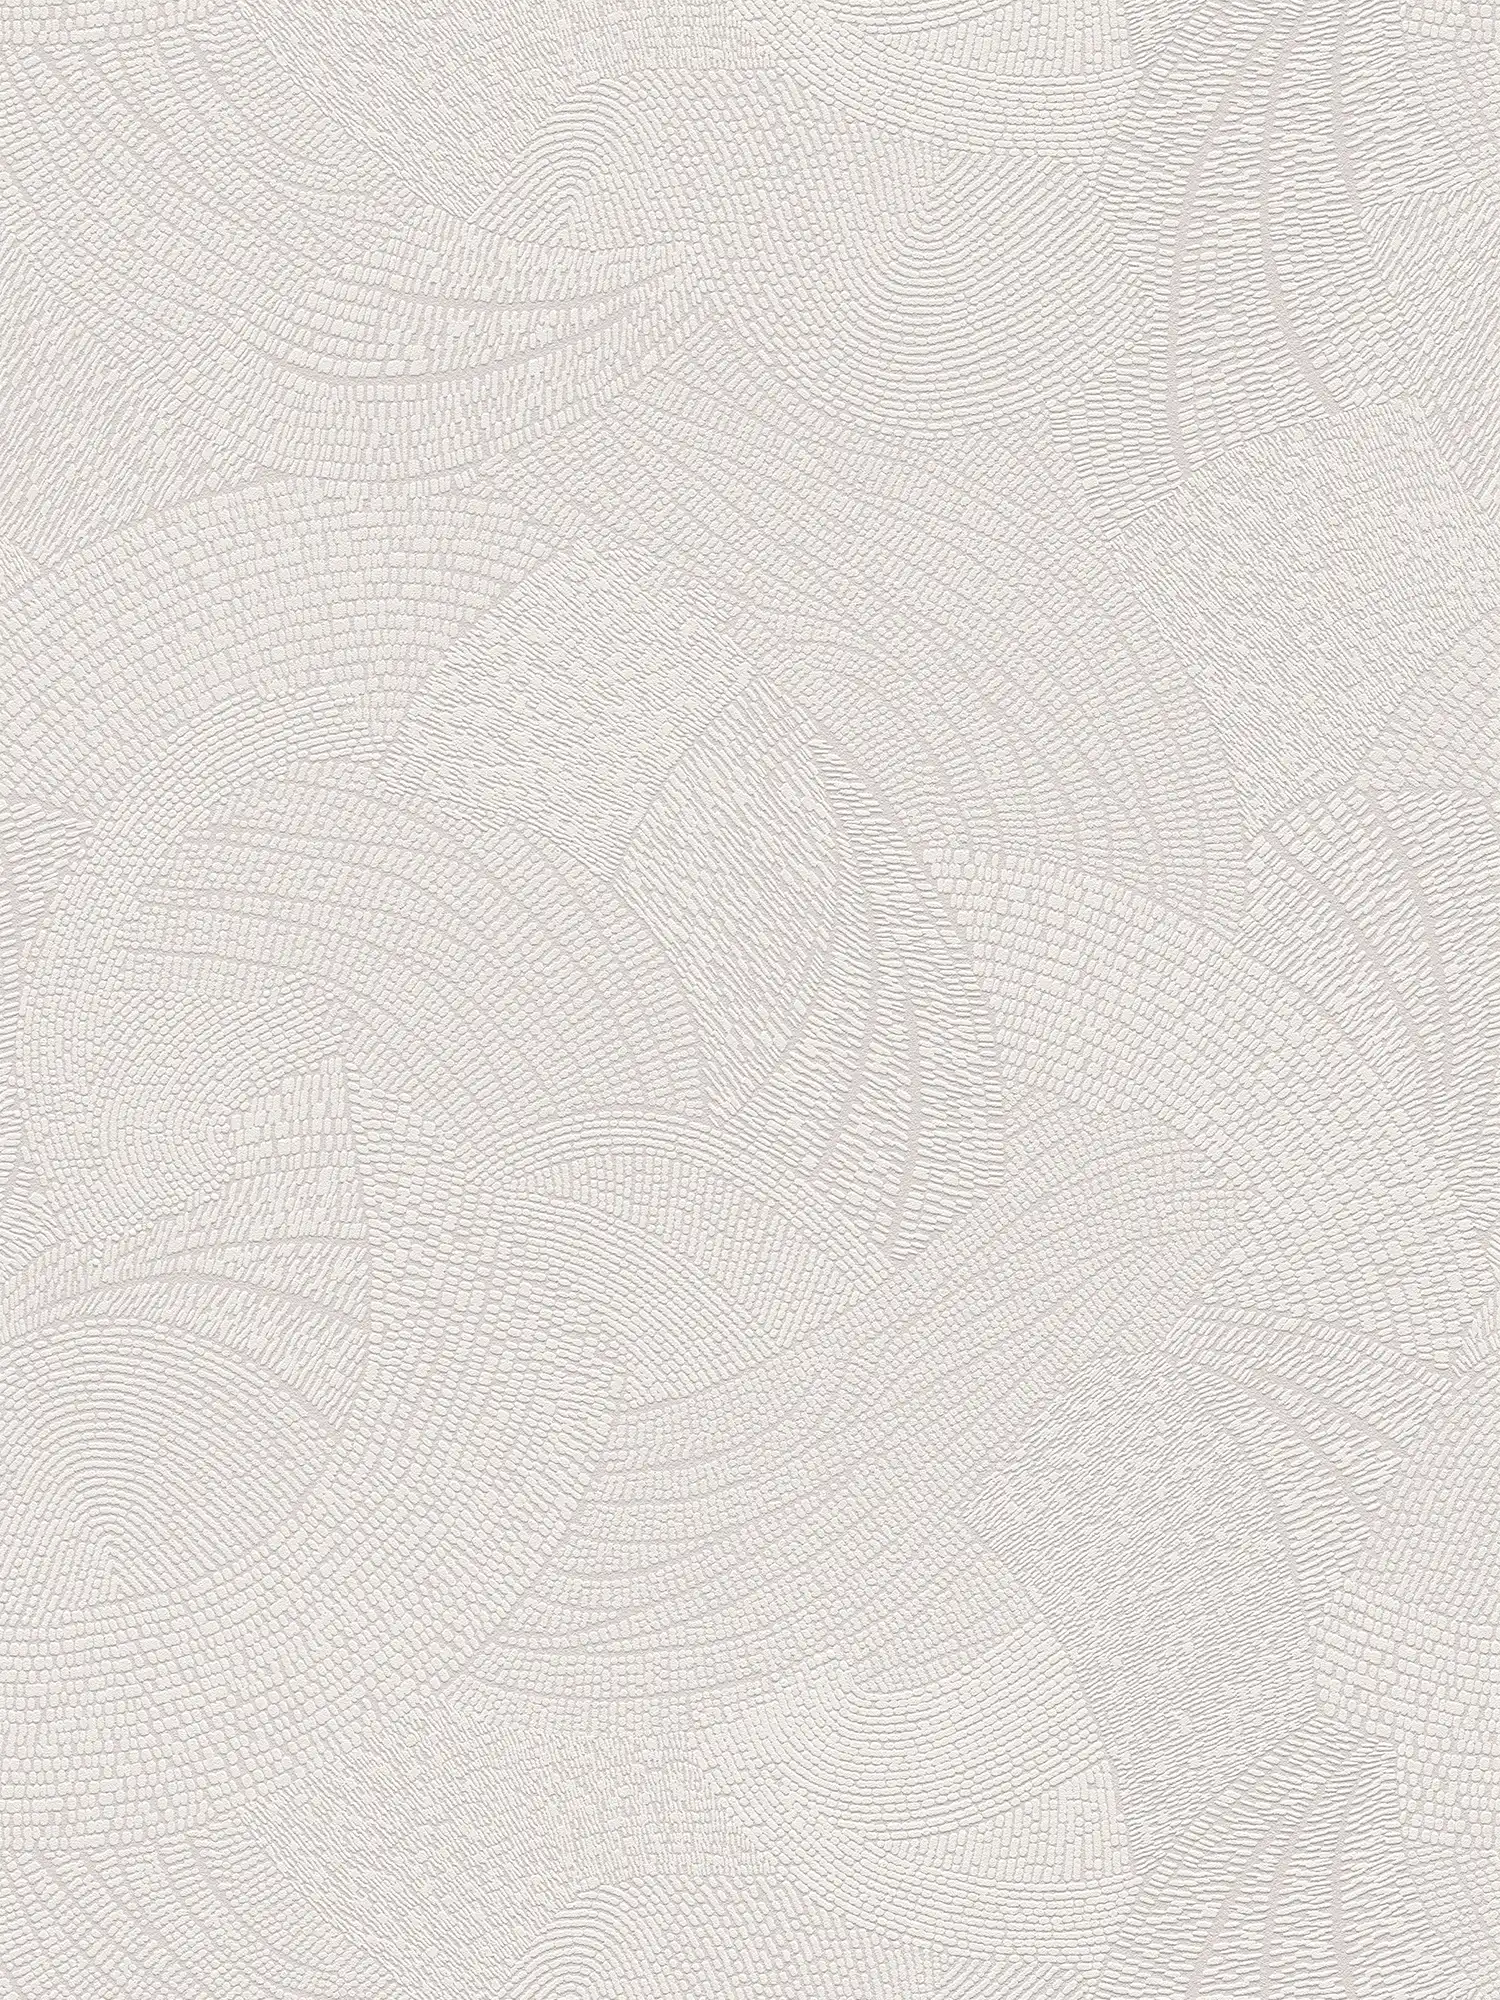 Papel pintado tejido-no tejido con motivo gráfico ondulado - gris, blanco
